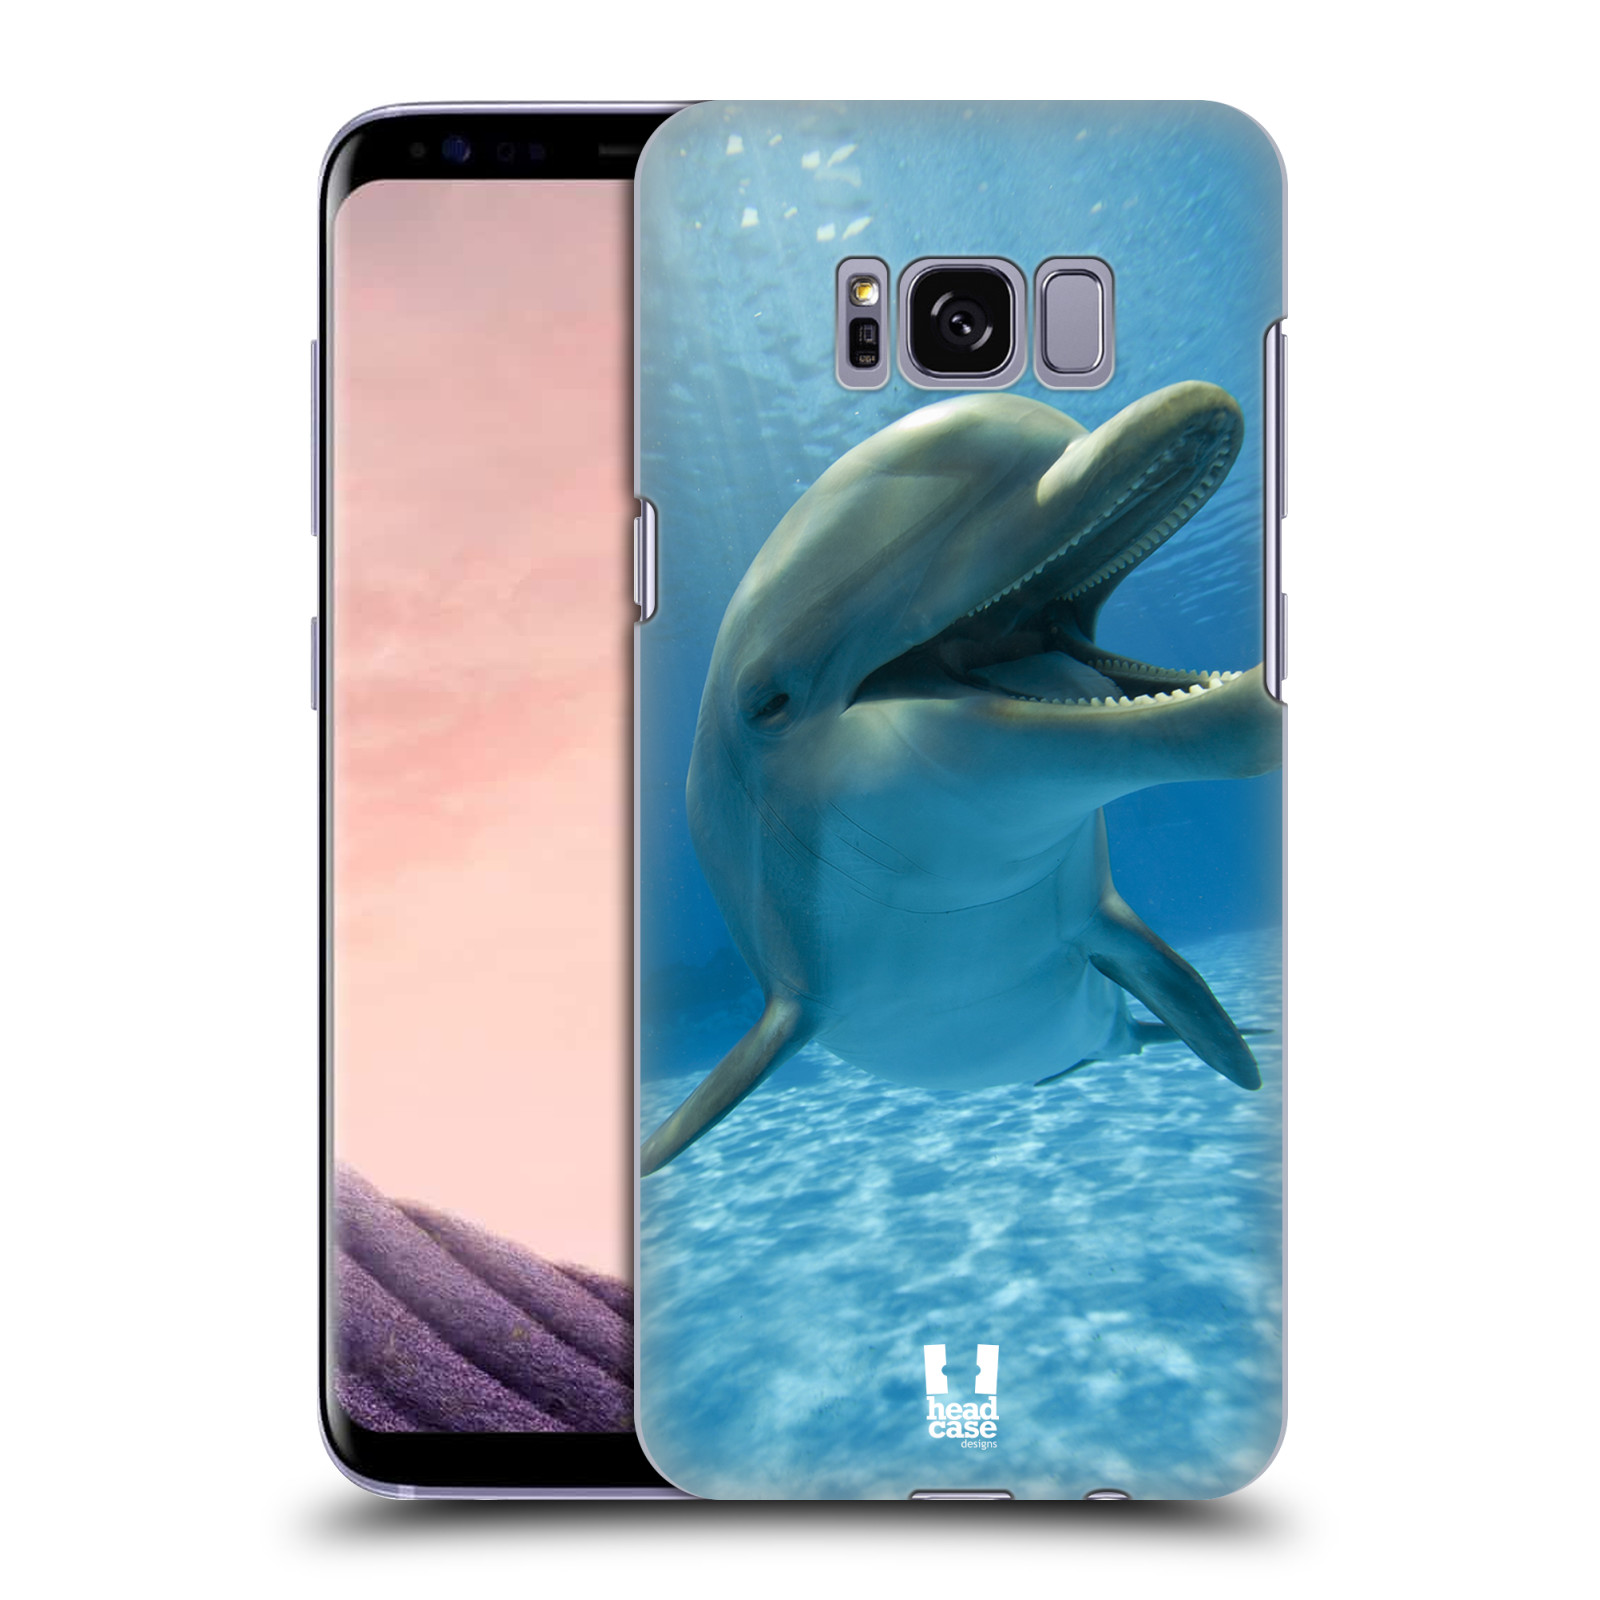 Zadní obal pro mobil Samsung Galaxy S8 - HEAD CASE - Svět zvířat delfín v moři